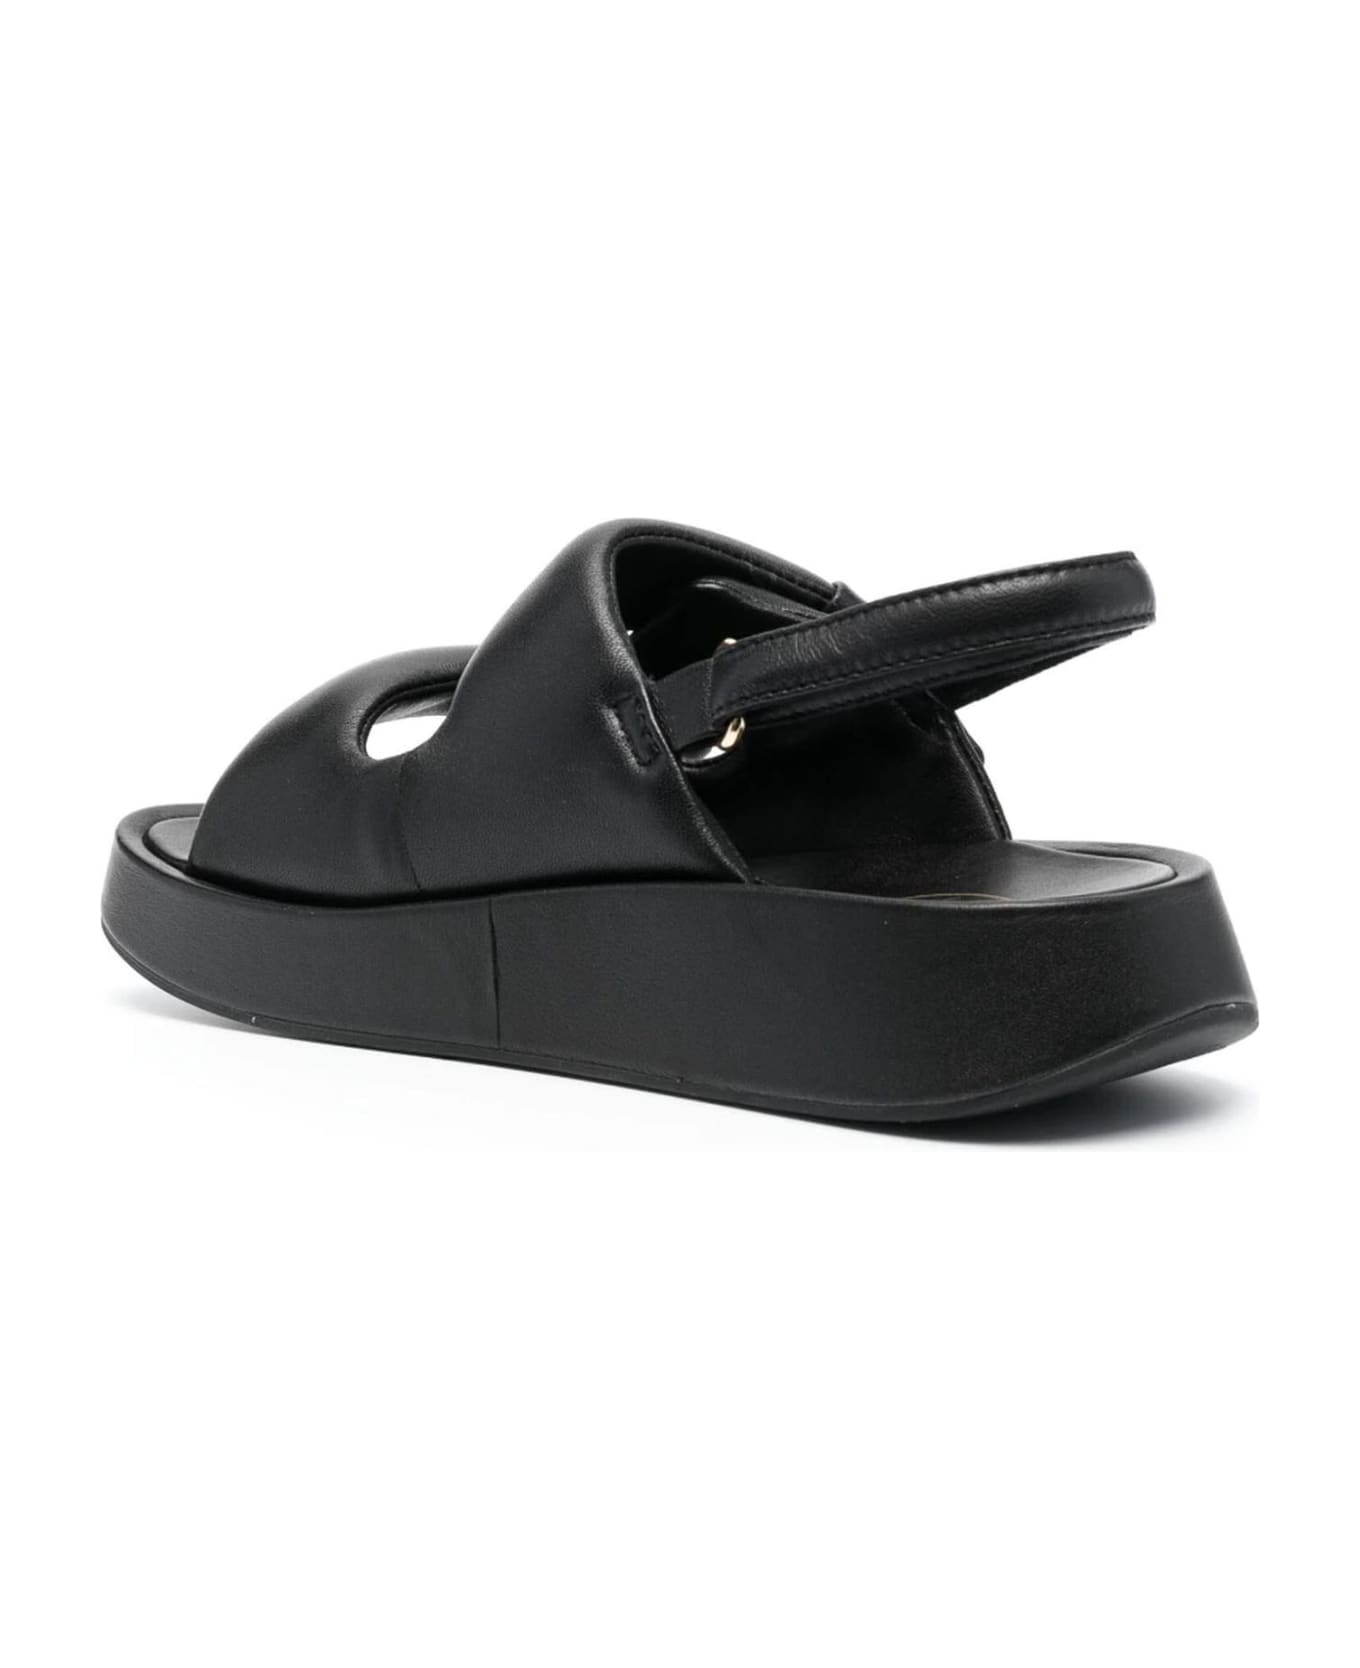 Ash Black Calf Leather Vinci Sandals